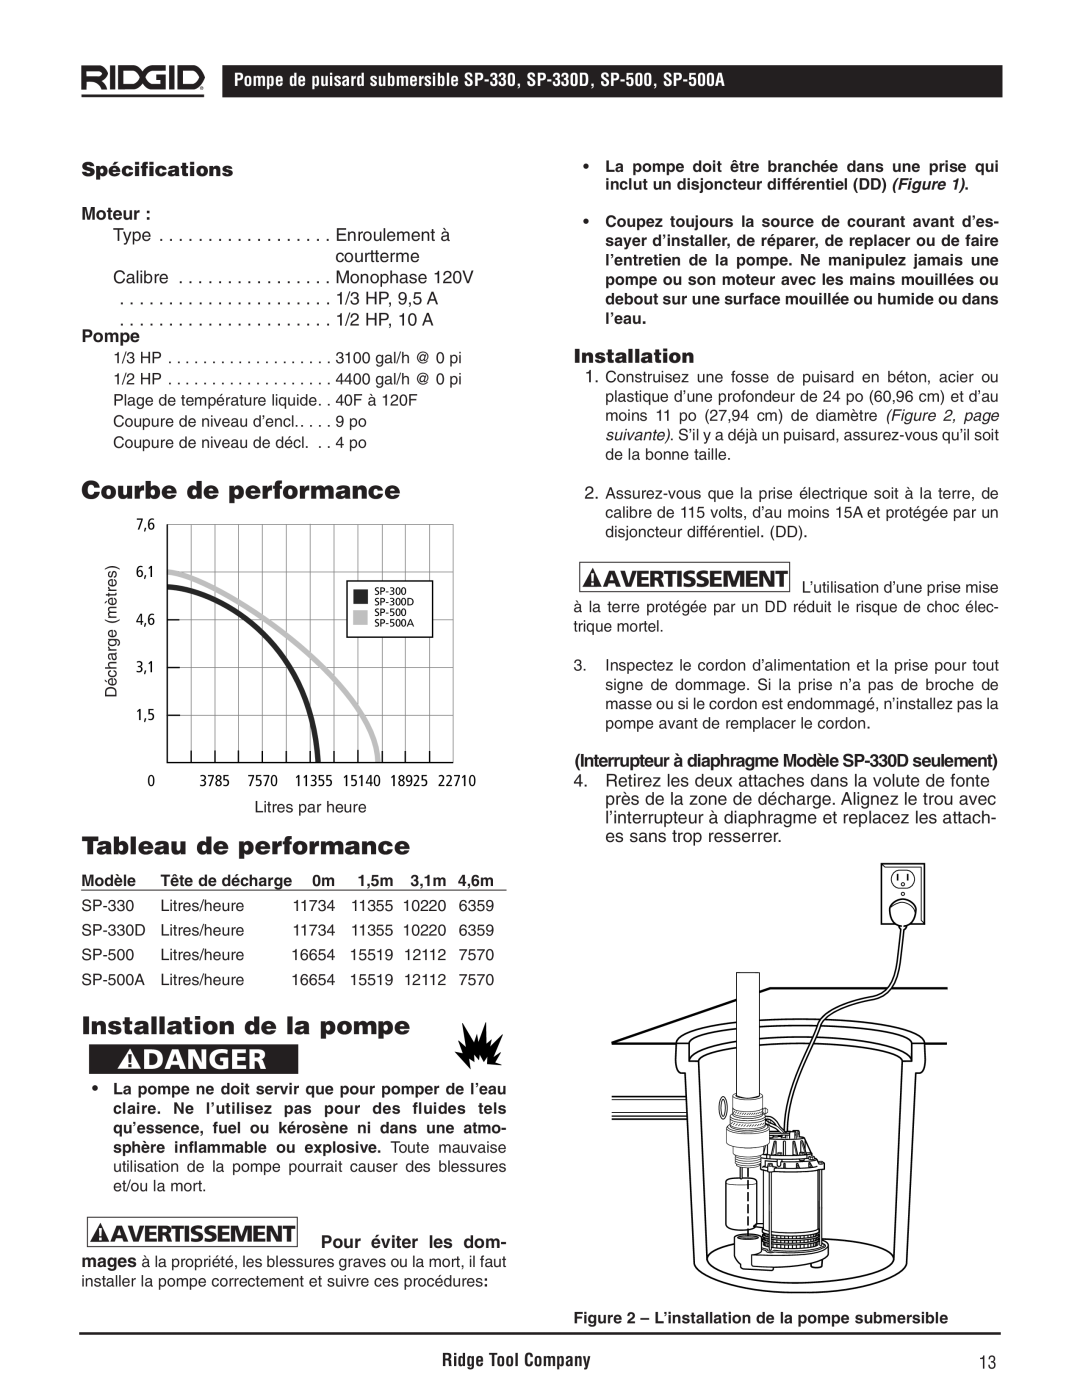 RIDGID SP-330 manual Courbe de performance, Tableau de performance, Installation de la pompe, Spécifications, Moteur, Pompe 